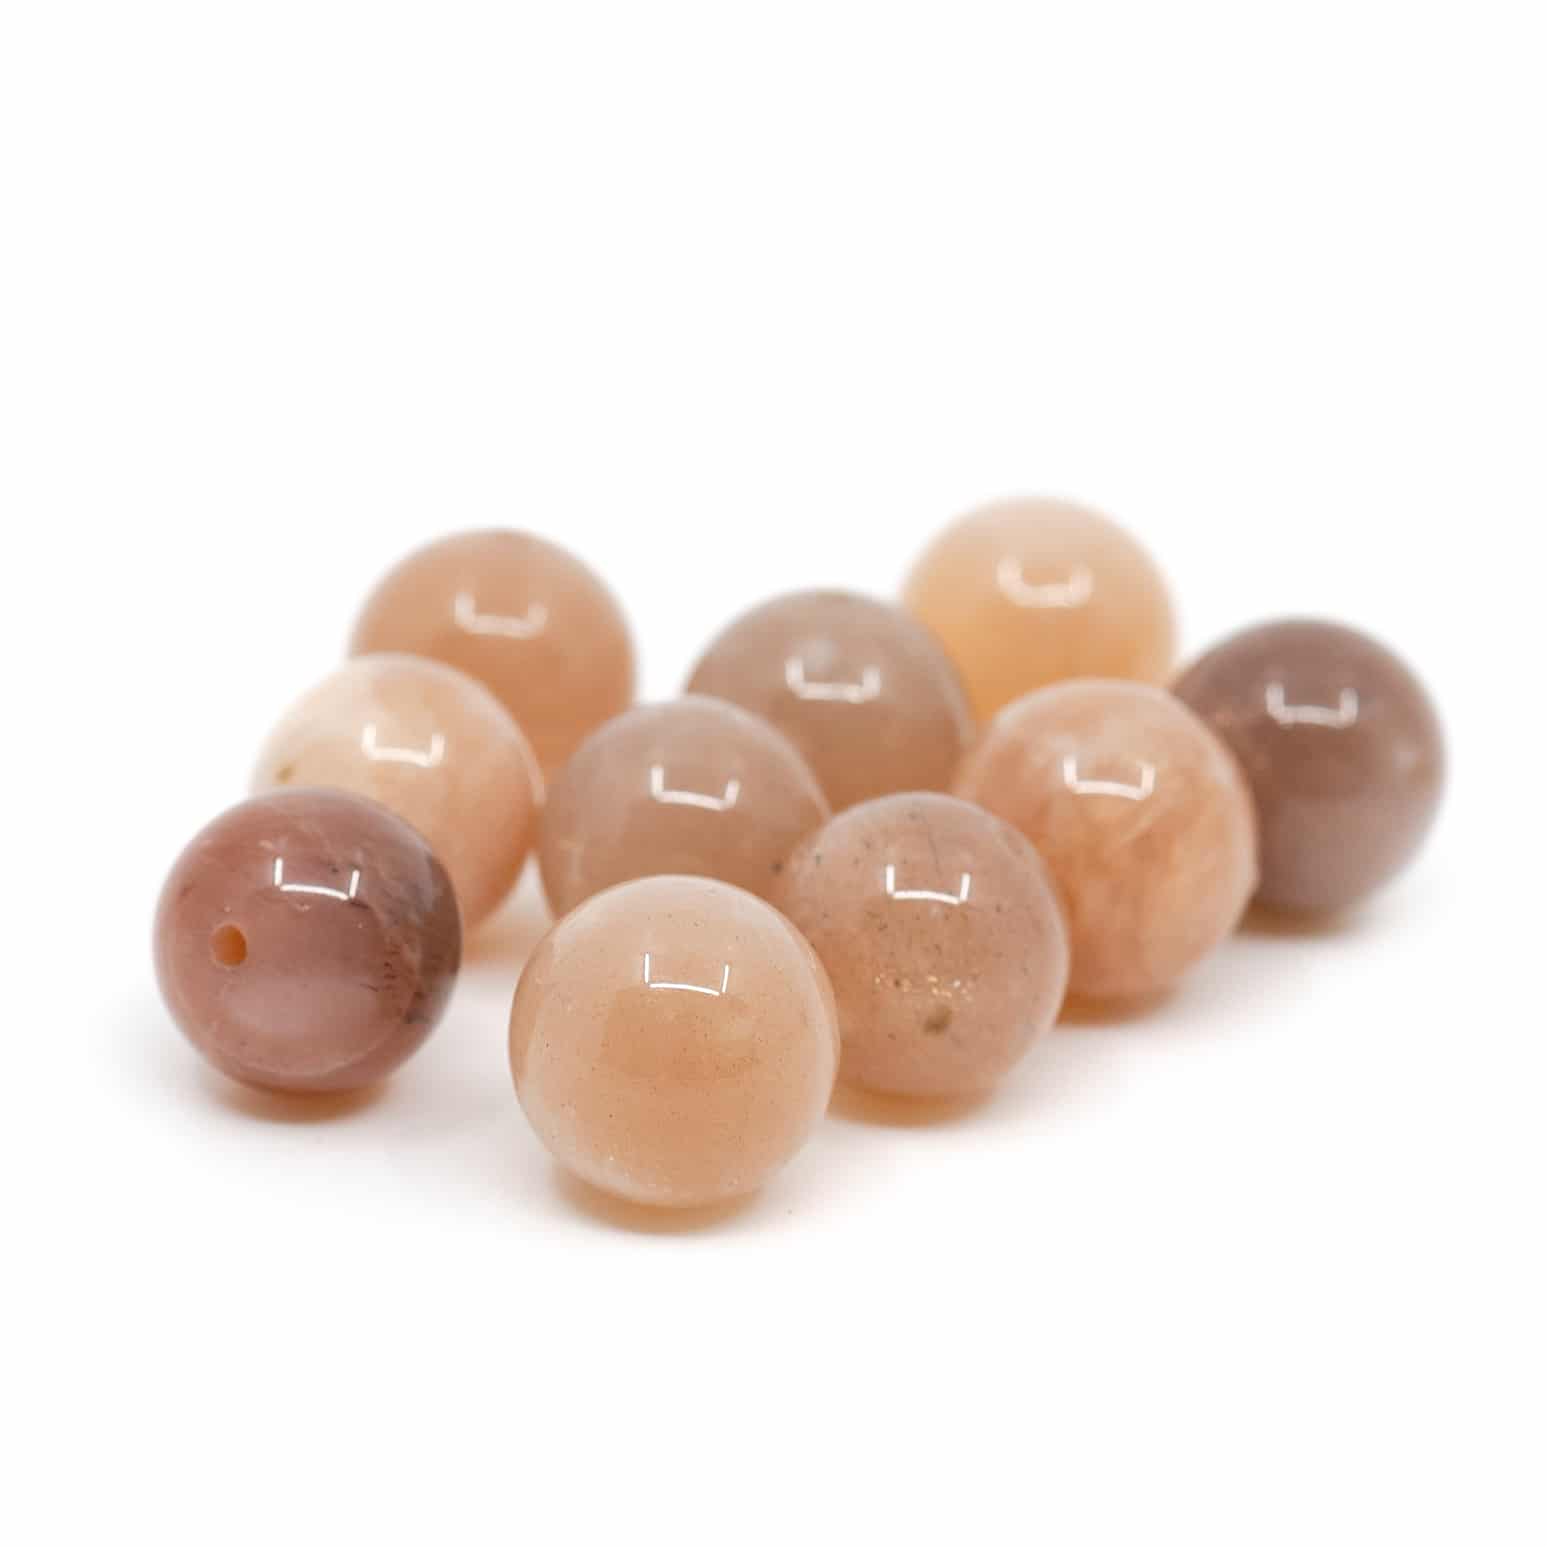 Perles Pierre de Soleil en Vrac - 10 pièces (10 mm)